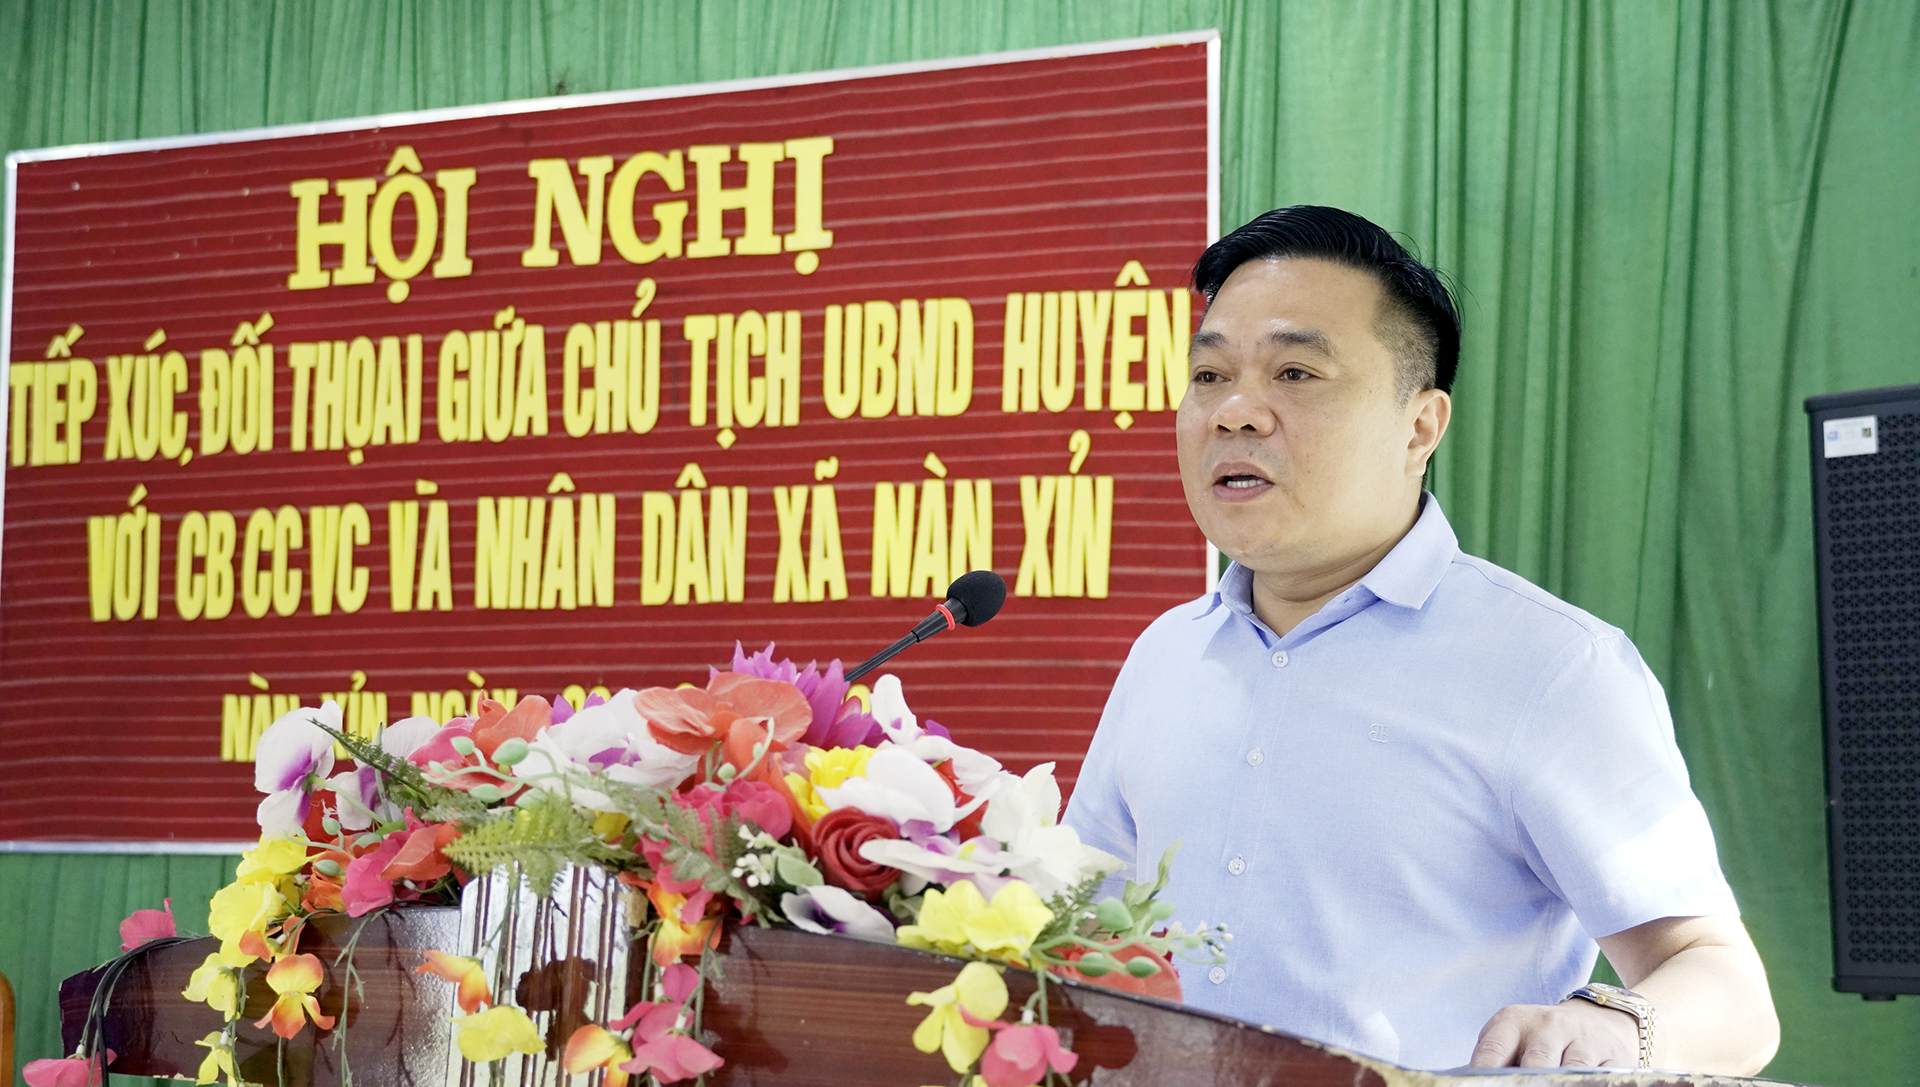 Chủ tịch UBND huyện Nguyễn Tiến Hùng tiếp xúc, đối thoại với cán bộ, công chức viên chức và nhân dân xã Nàn Xỉn